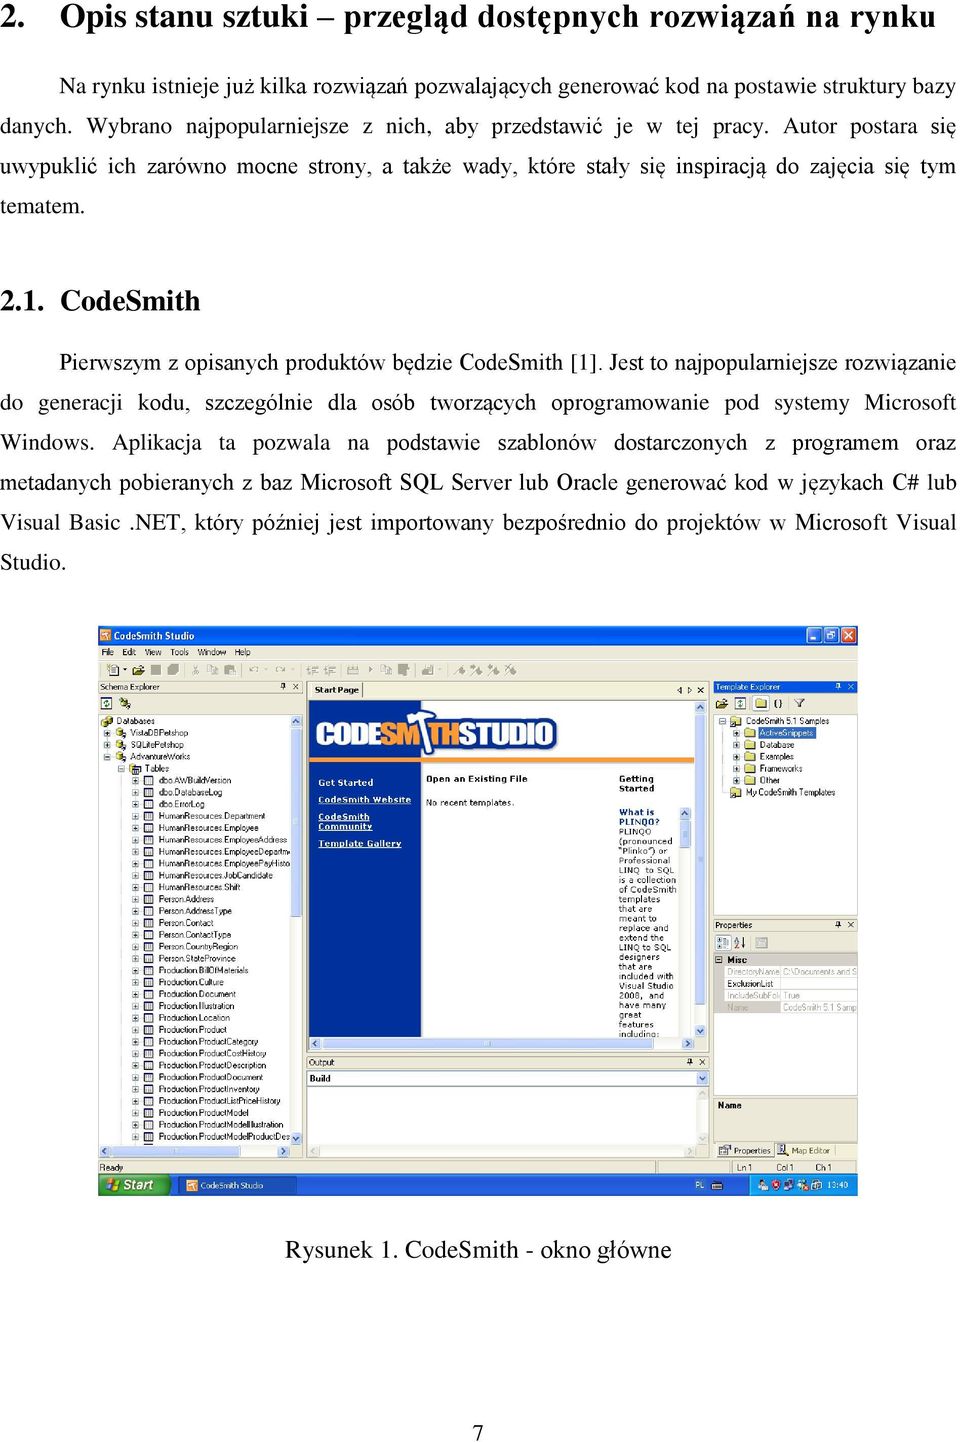 CodeSmith Pierwszym z opisanych produktów będzie CodeSmith [1]. Jest to najpopularniejsze rozwiązanie do generacji kodu, szczególnie dla osób tworzących oprogramowanie pod systemy Microsoft Windows.